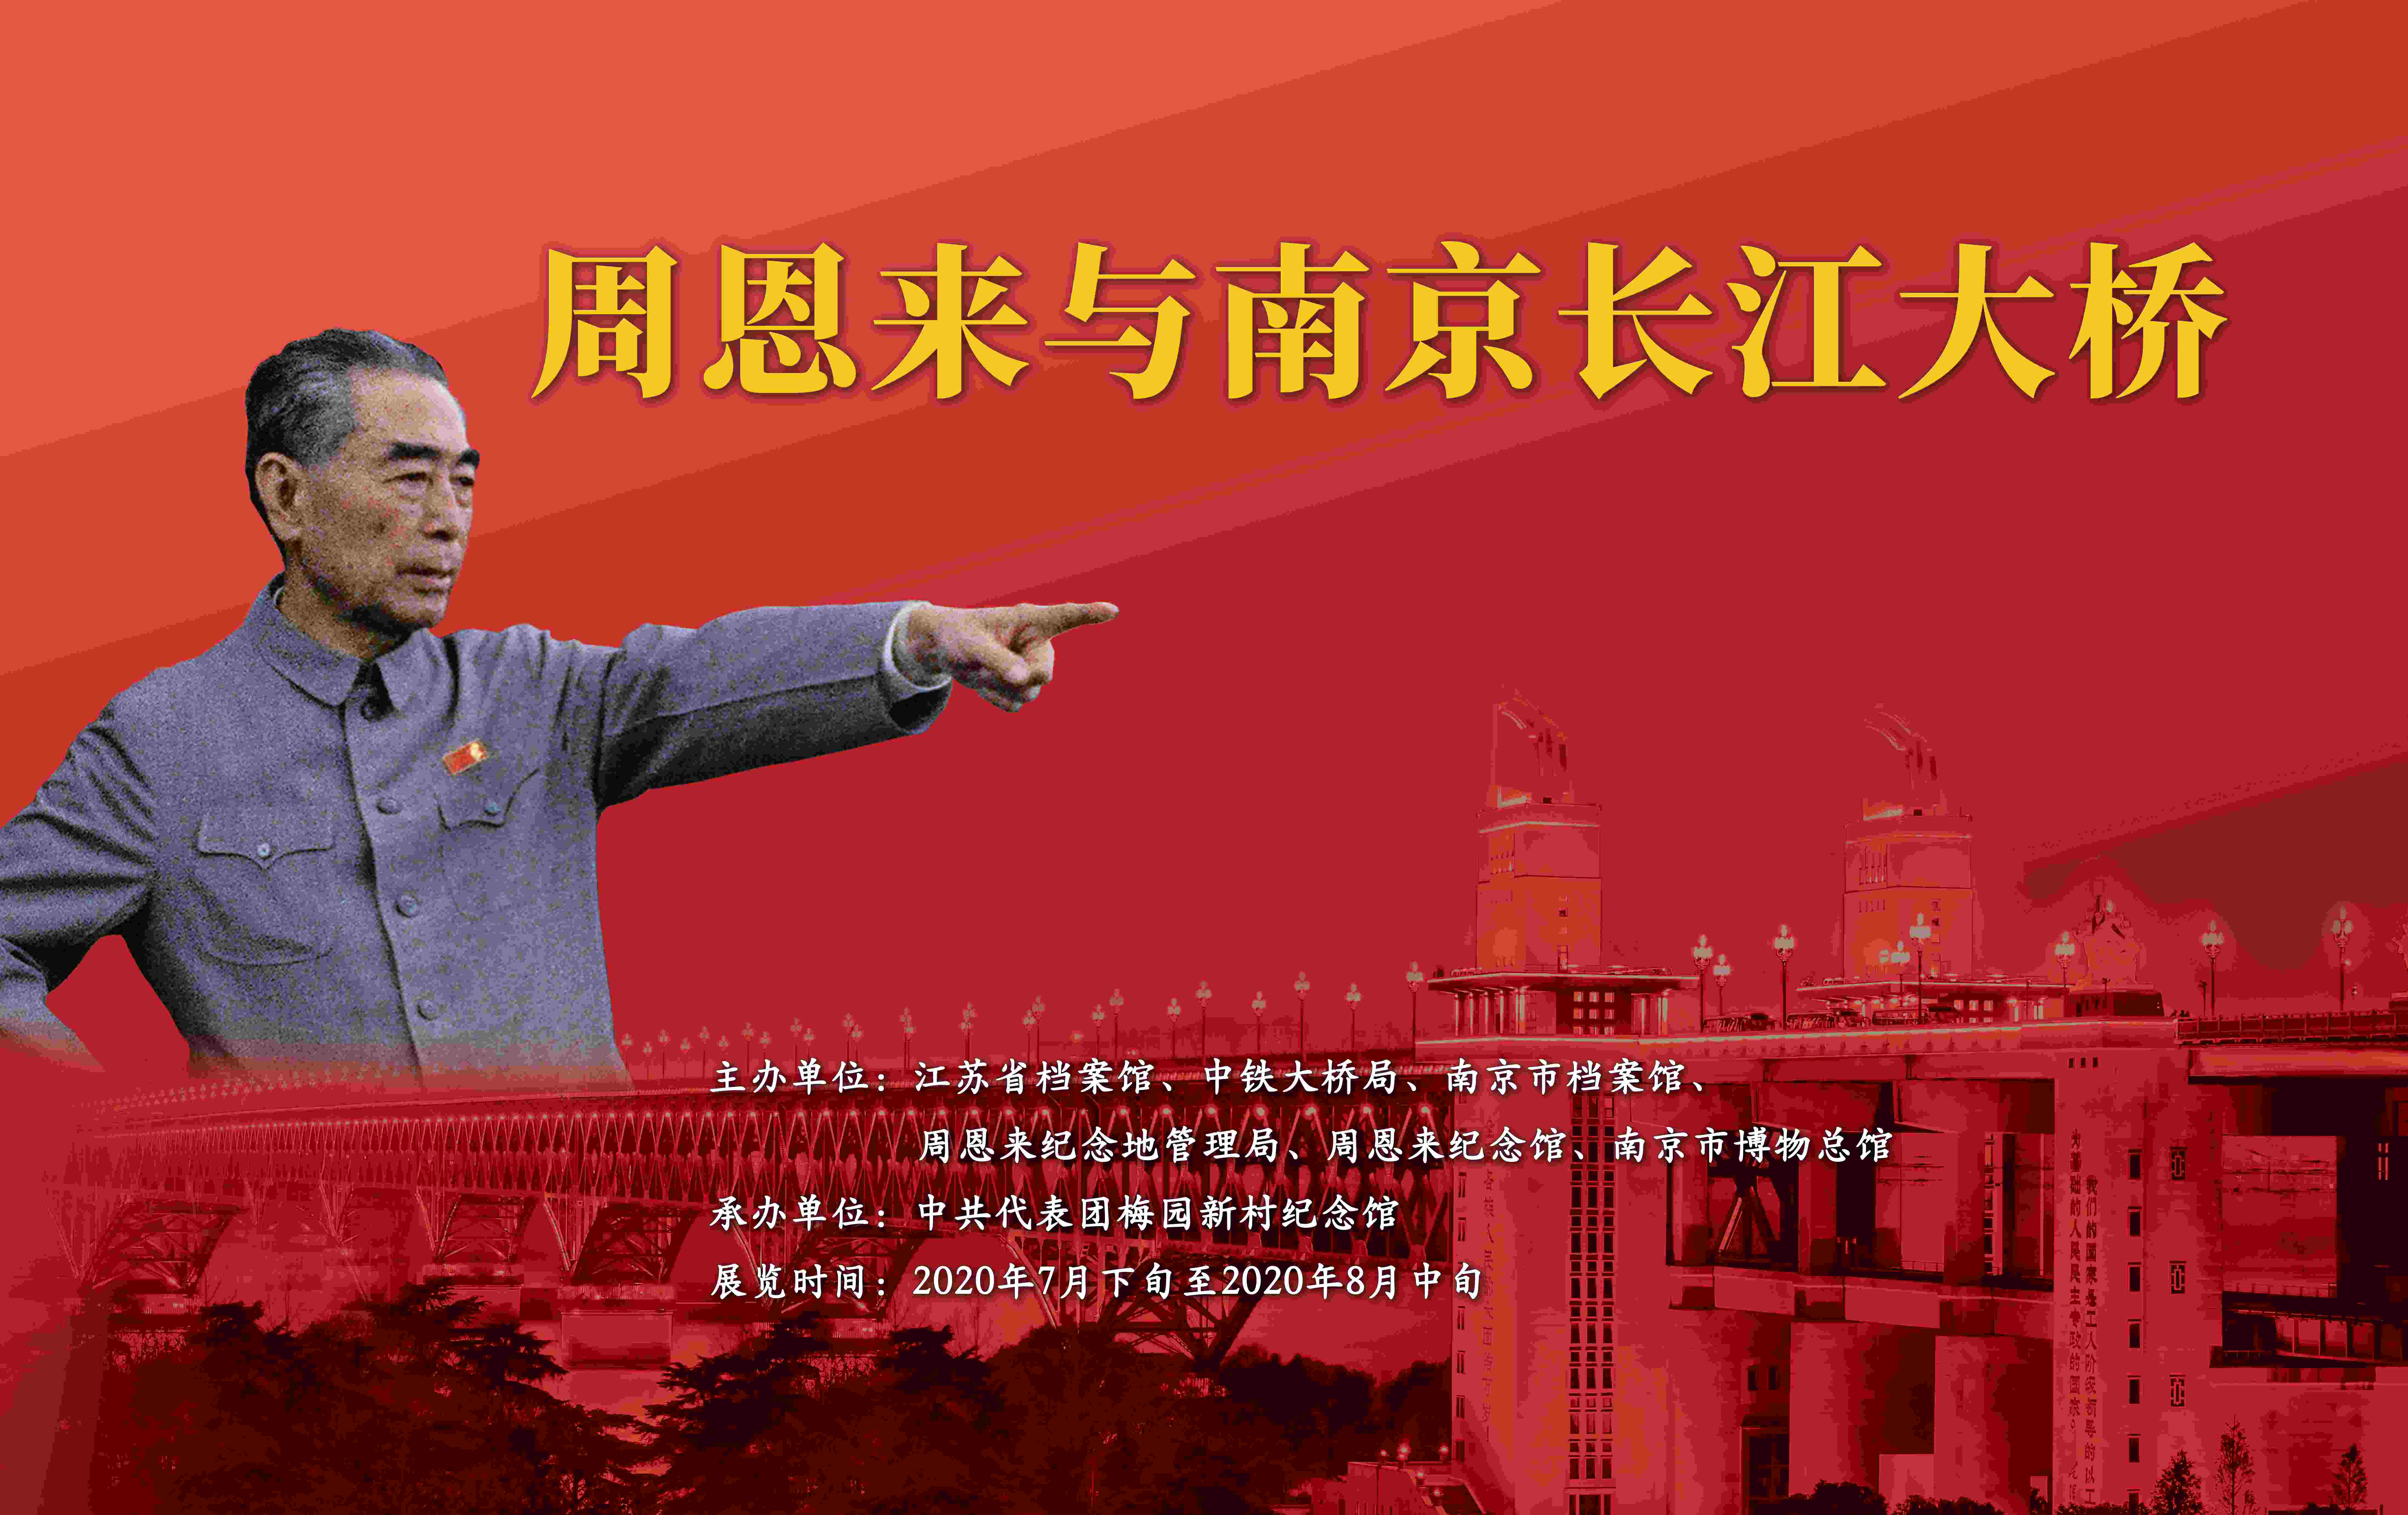 202007-长江大桥-深红WWWW-展厅海报-310厘米×195厘米-四个边各放10厘米白边1(1).jpg